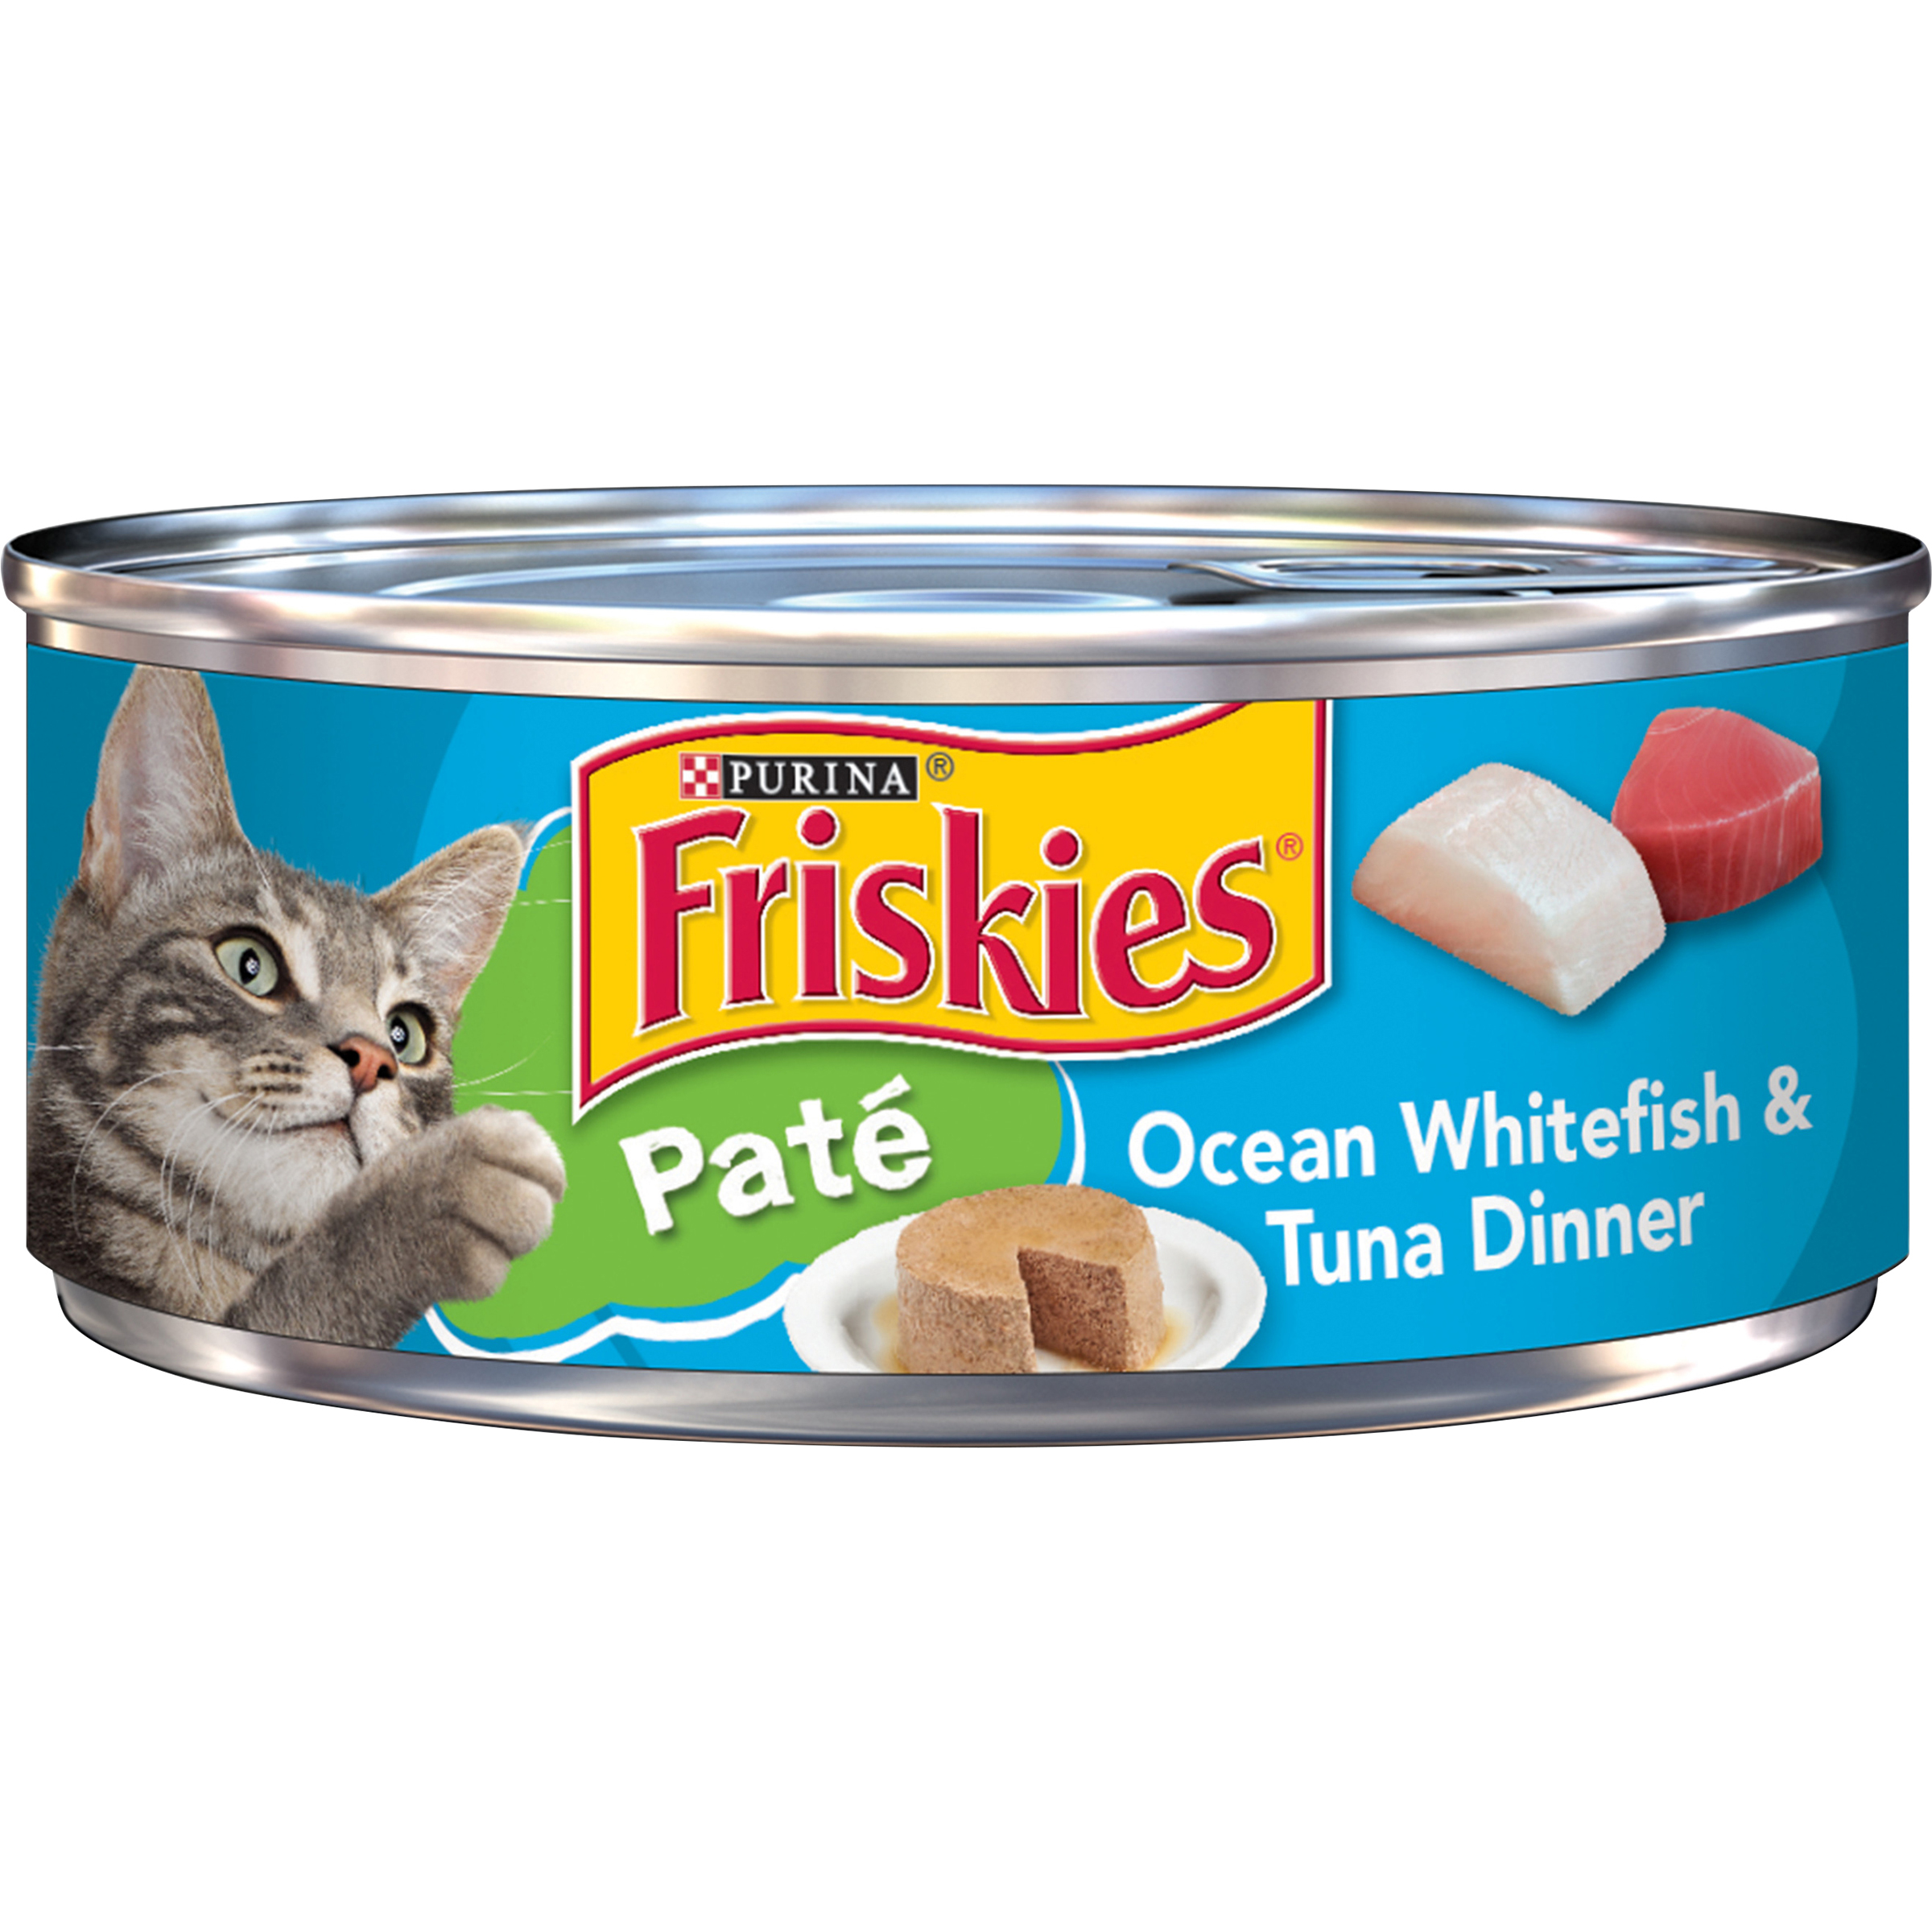 Friskies Wet Classic Pate Ocean Whitefish & Tuna Dinner